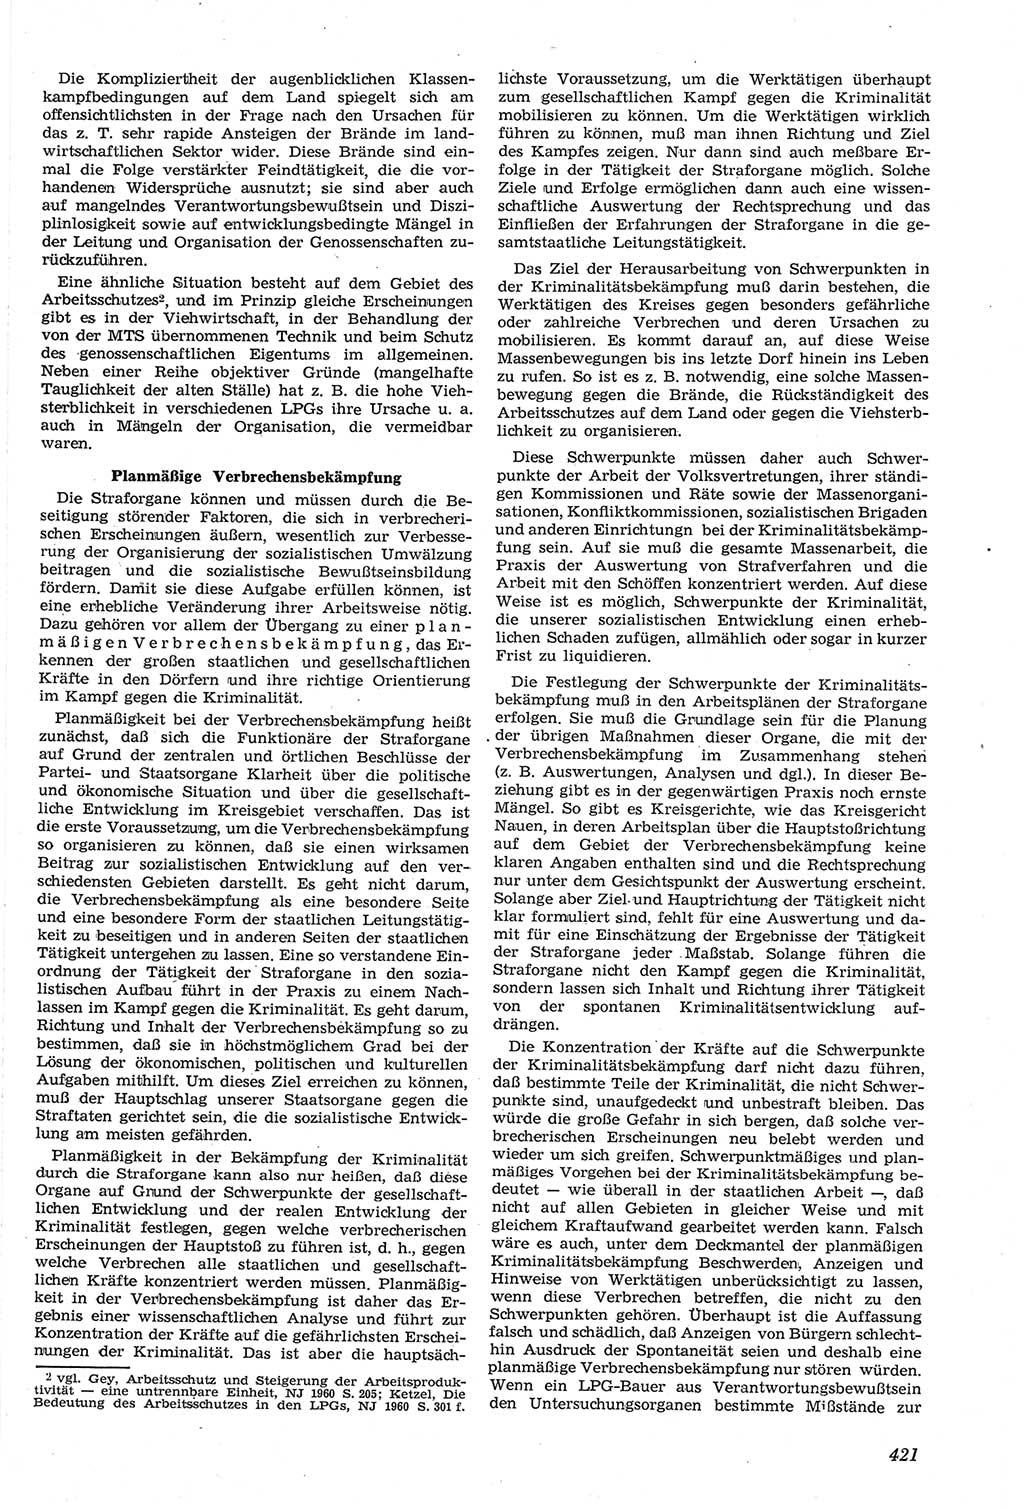 Neue Justiz (NJ), Zeitschrift für Recht und Rechtswissenschaft [Deutsche Demokratische Republik (DDR)], 14. Jahrgang 1960, Seite 421 (NJ DDR 1960, S. 421)